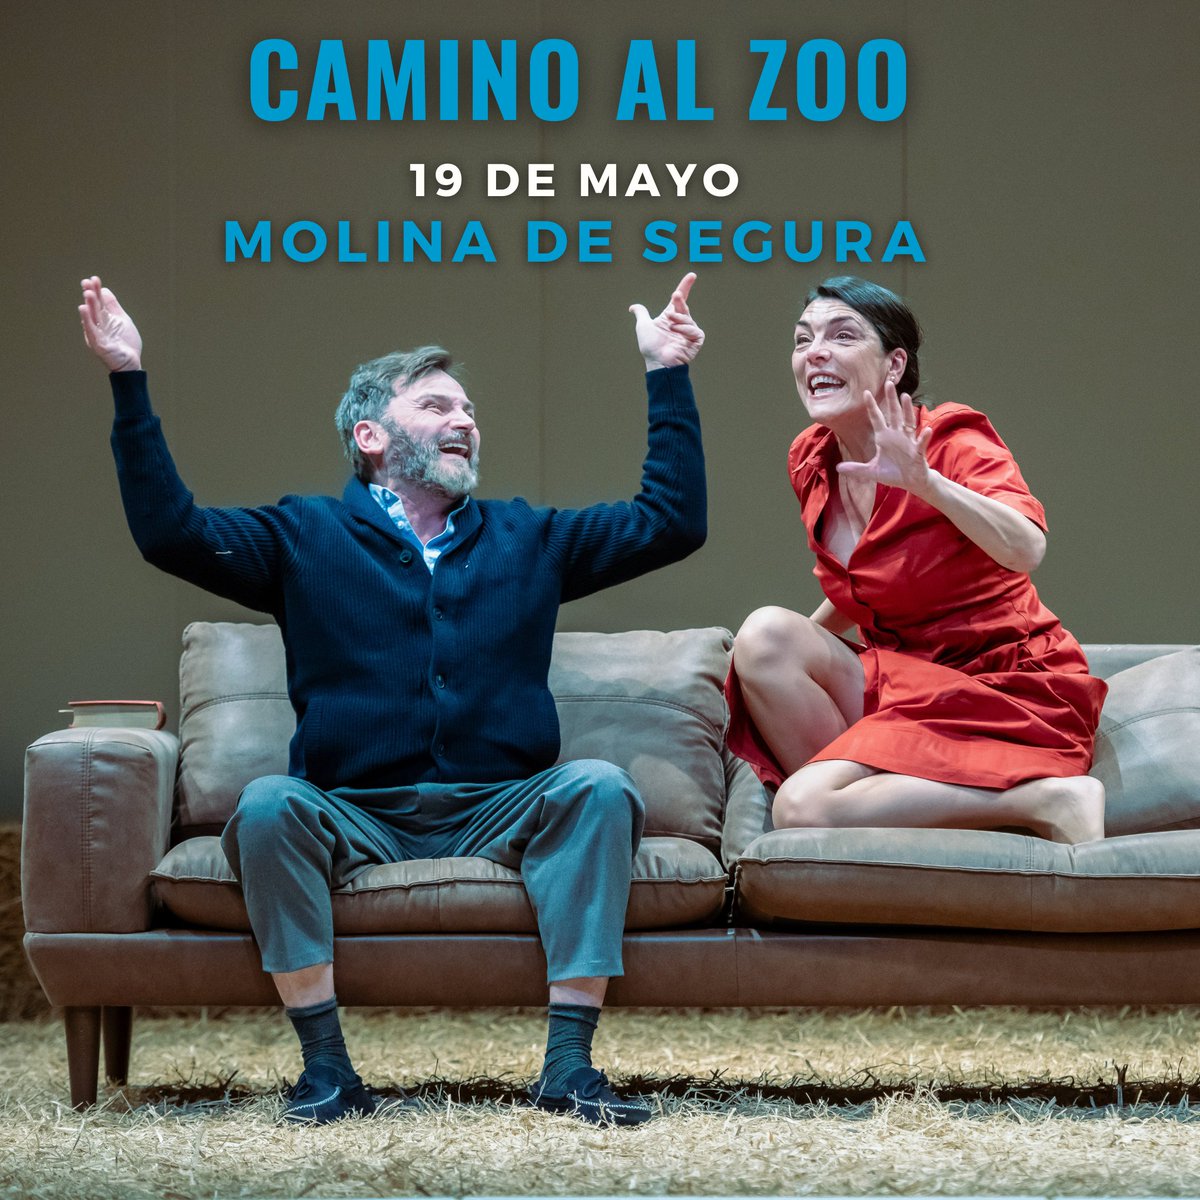 #CaminoAlZoo podrá disfrutarse mañana, 19 de mayo, el en Teatro Villa de Molina de Molina de Segura (Murcia) 📍 Con #FernandoTejero, @eldanimuriel y @mabeldelpozo 🎭 ¡Os esperamos! 😉 @JCimarro